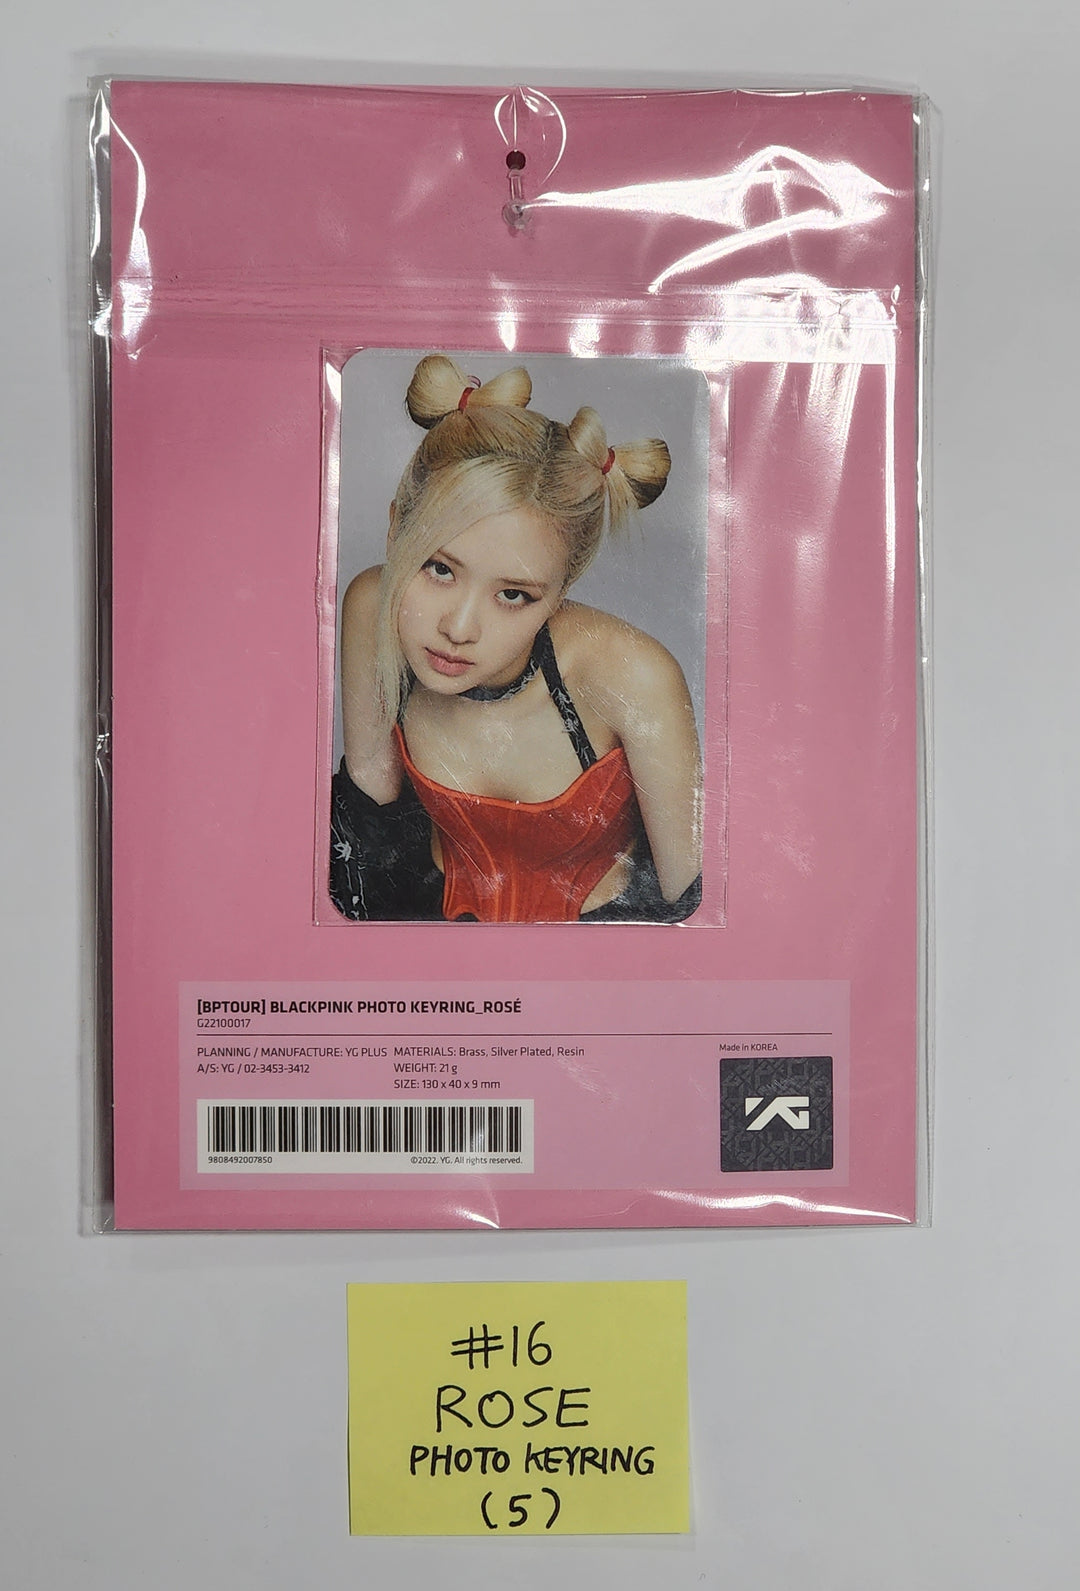 블랙핑크 "Born Pink" 월드 투어 서울 - Official MD